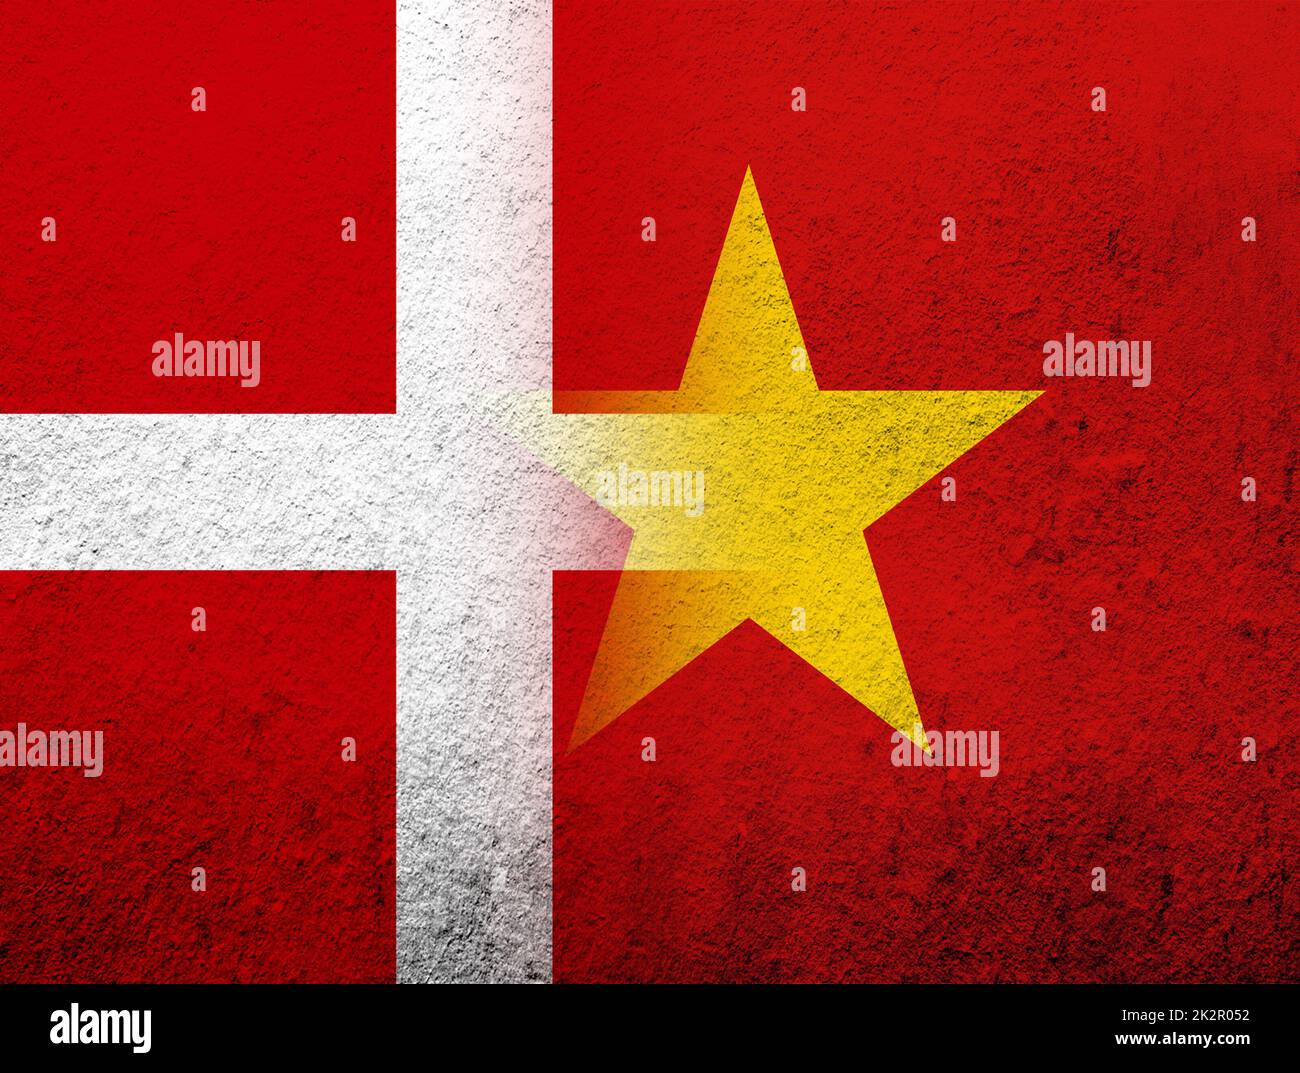 Das Königreich Dänemark Nationalflagge mit der Sozialistischen Republik Vietnam Nationalflagge. Grunge Hintergrund Stockfoto